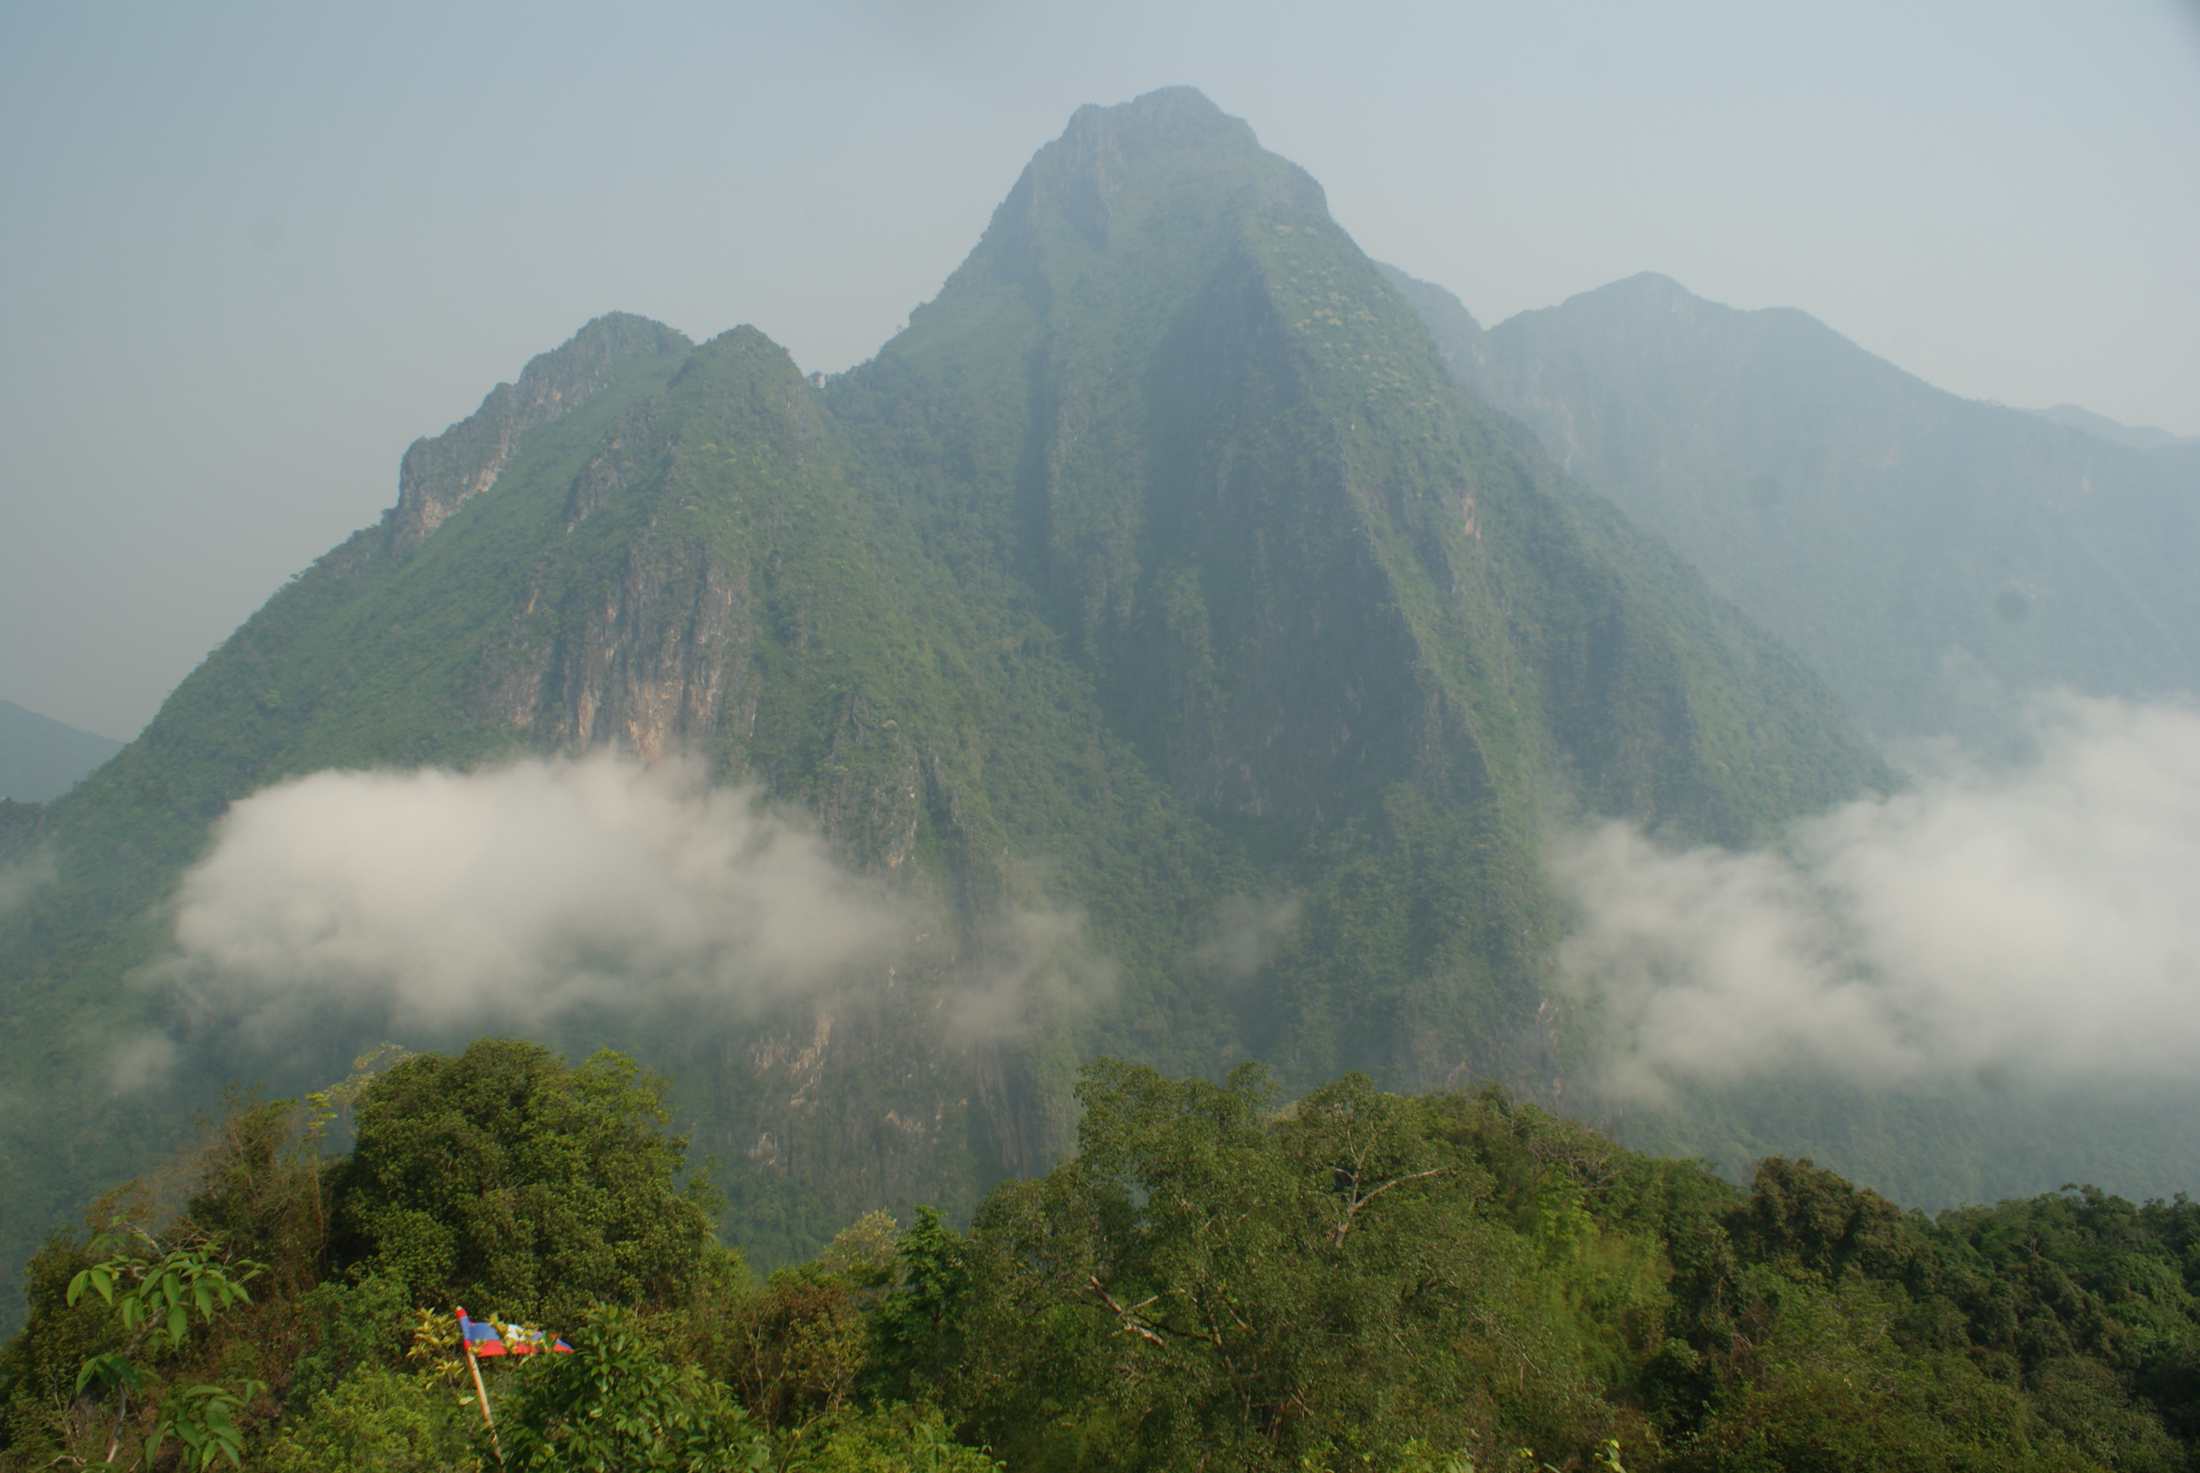 First viewpoint, Pha Daeng Peak. 